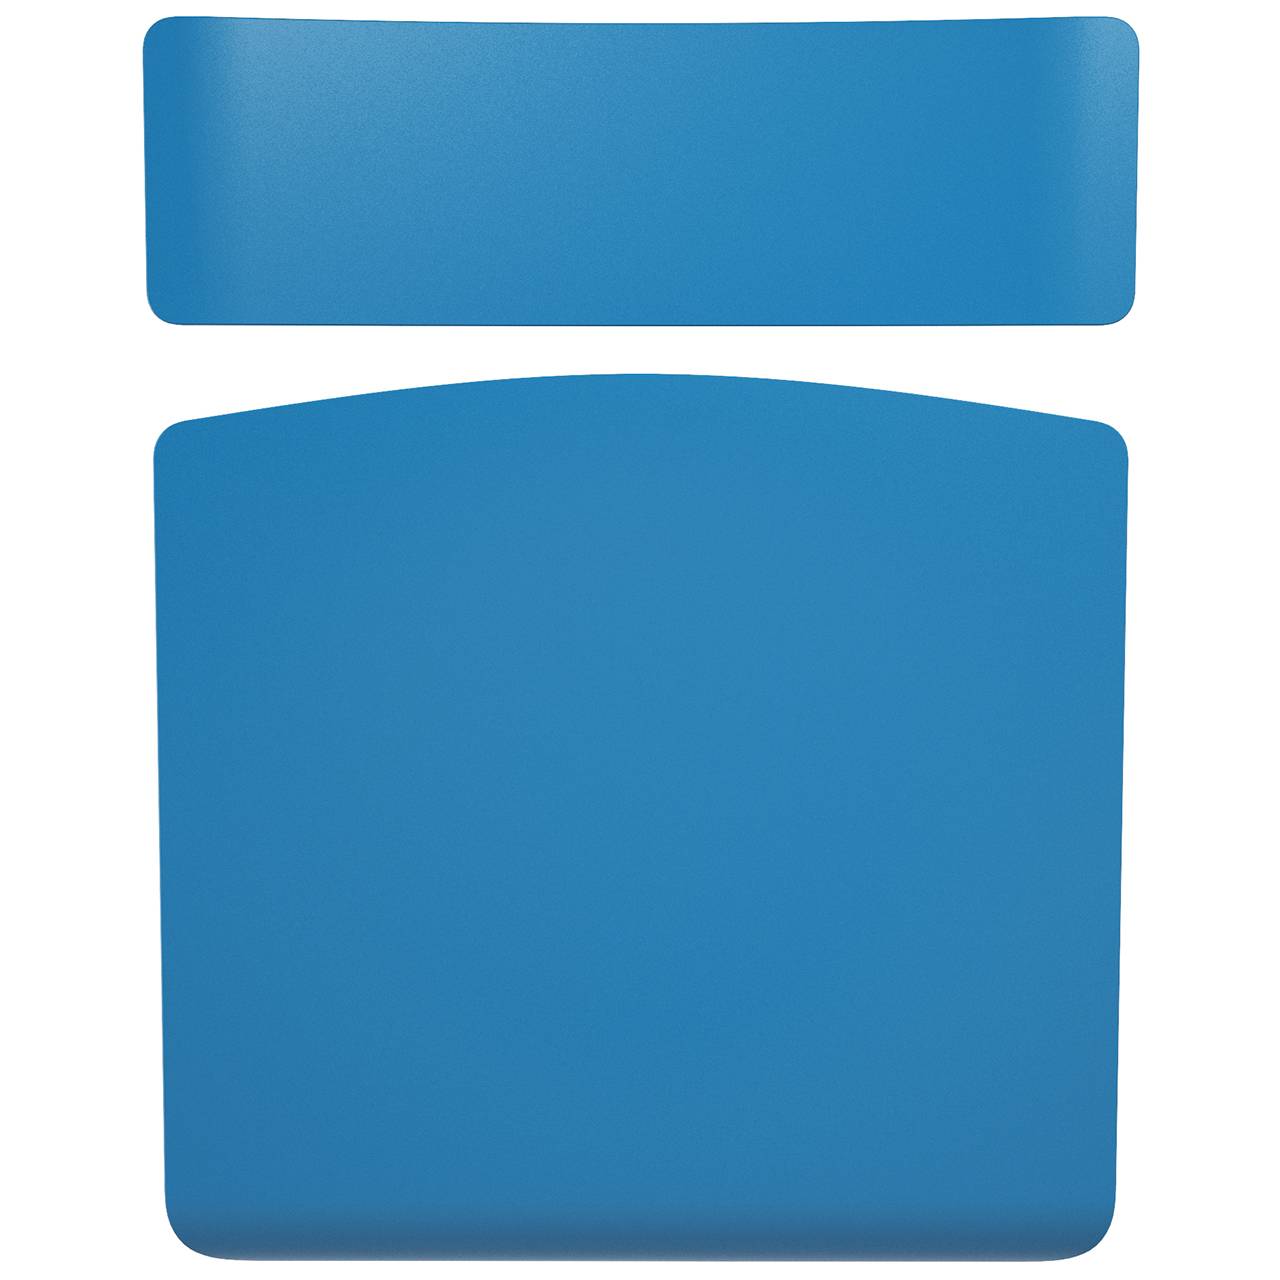 Стул ученический регулируемый (гр. 2-4, 3-5, 4-6 или 5-7) серый Синий 4-6 прямоугольная